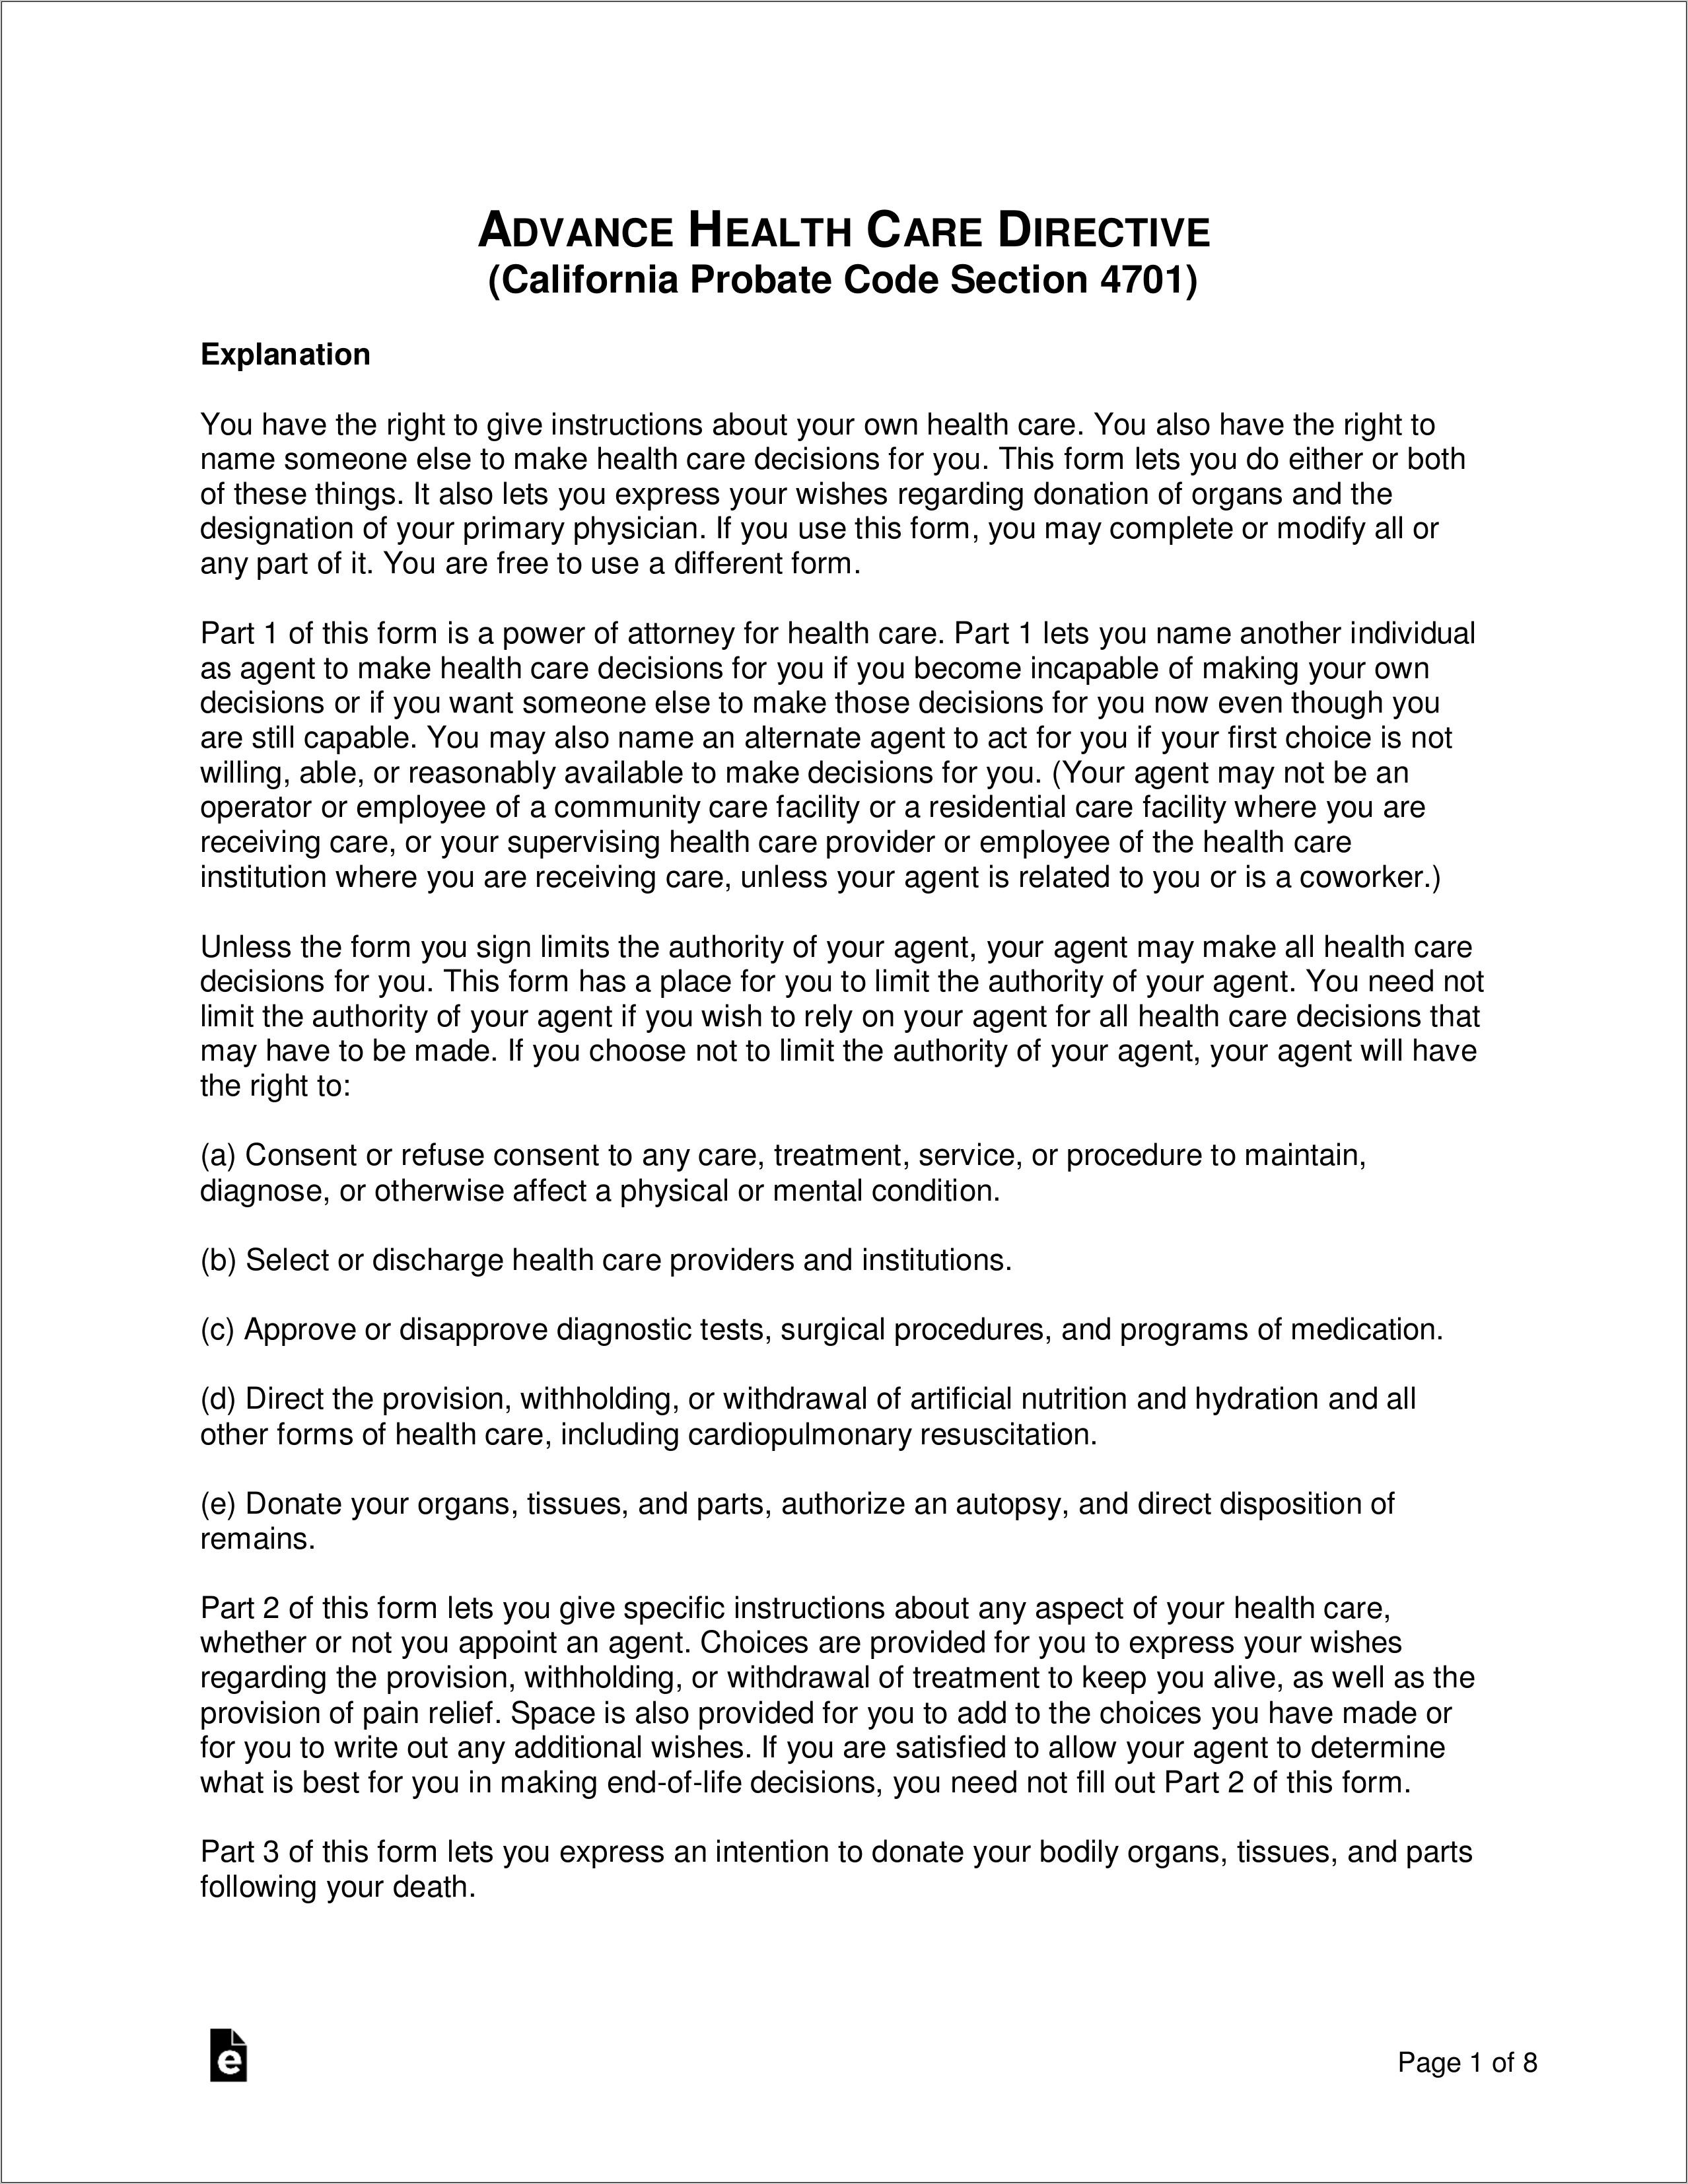 California Advance Health Care Directive Form 2019